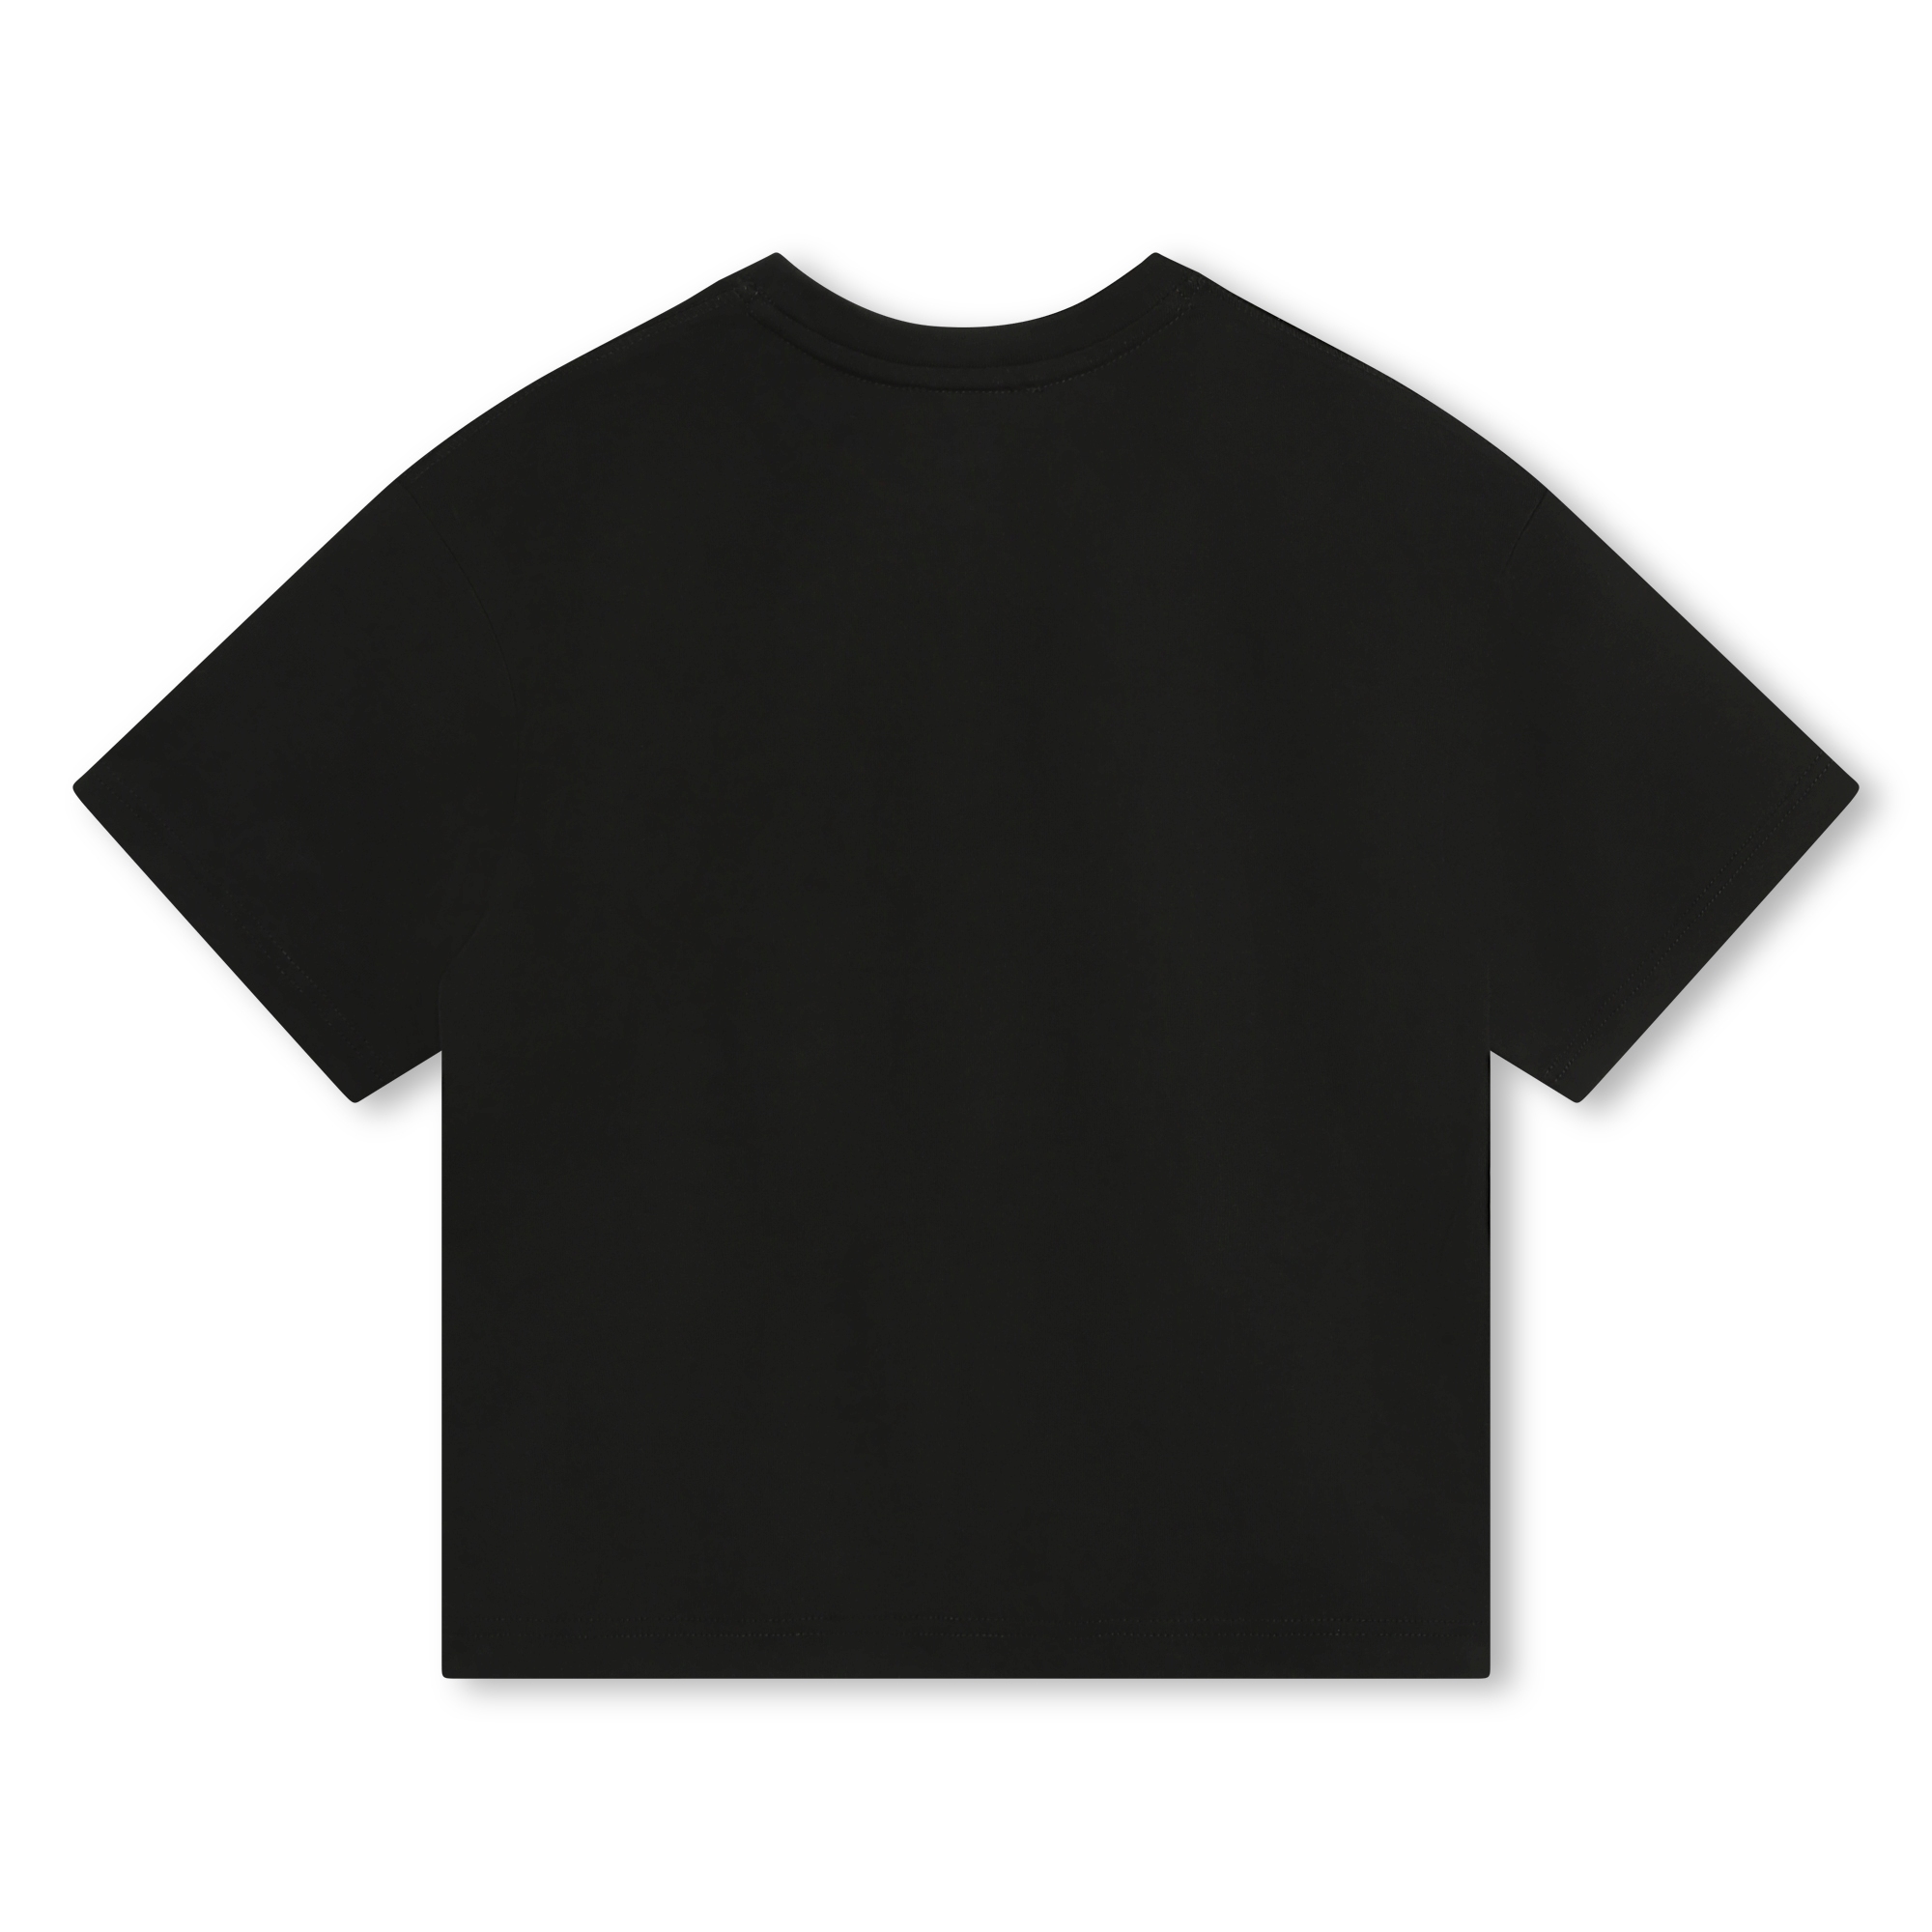 Kurzärmeliges Baumwoll-T-Shirt MARC JACOBS Für JUNGE